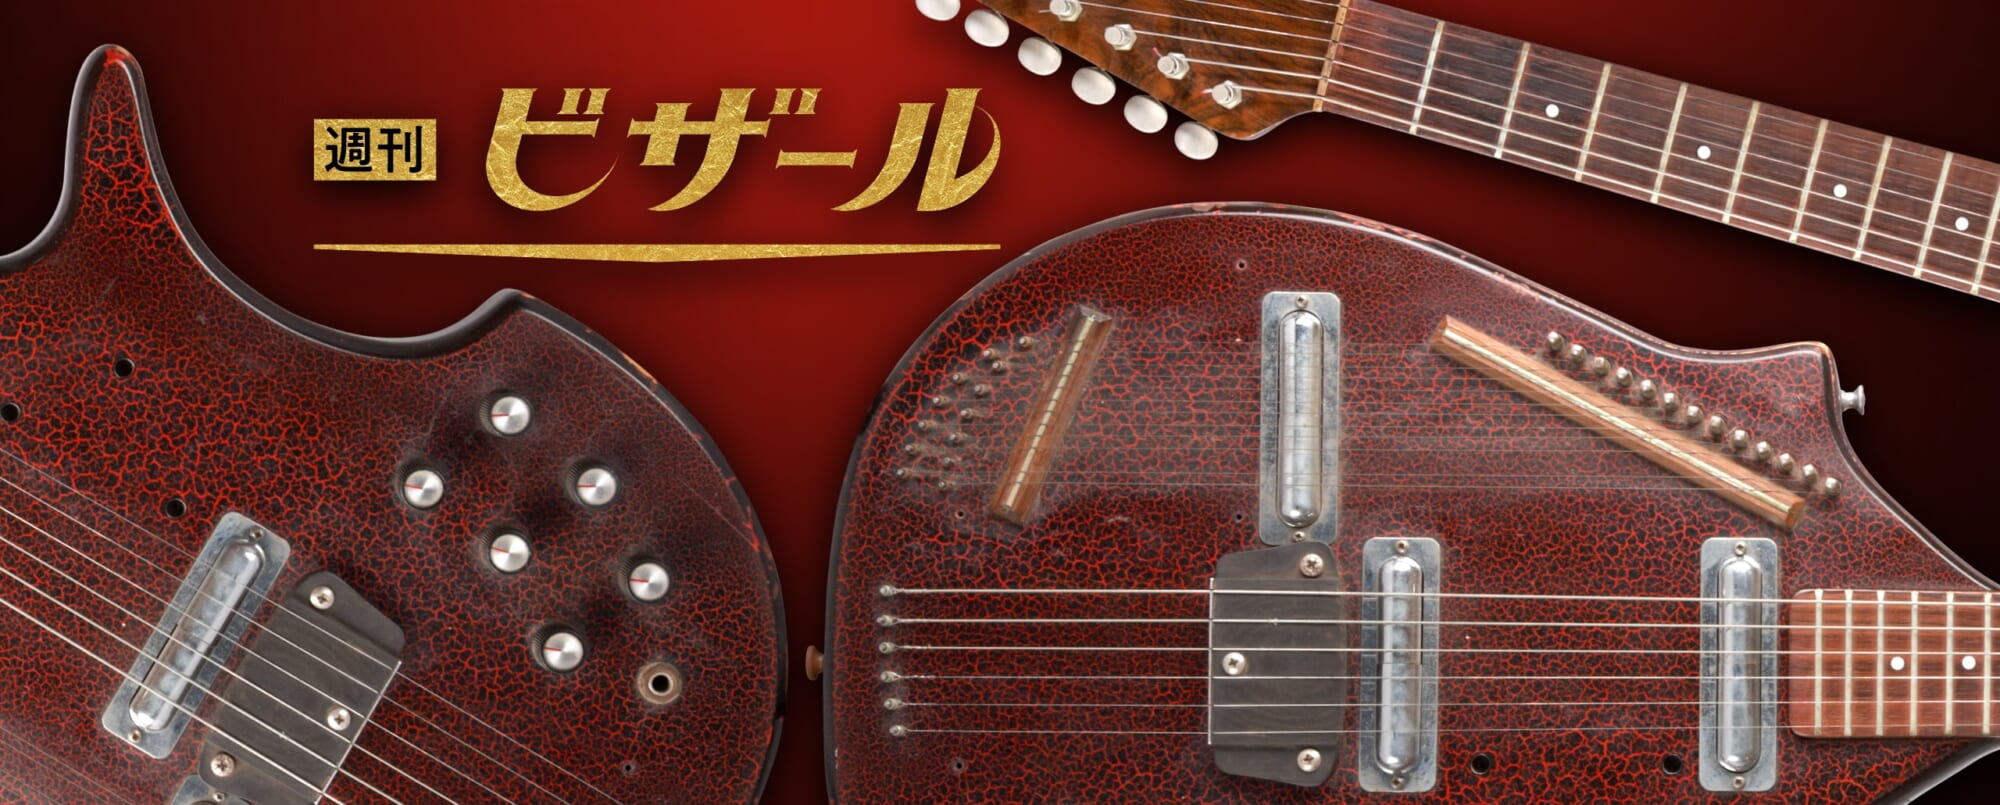 ビザール界屈指の発明コーラル エレクトリック・シタール 3S19｜週刊ビザール・ギター